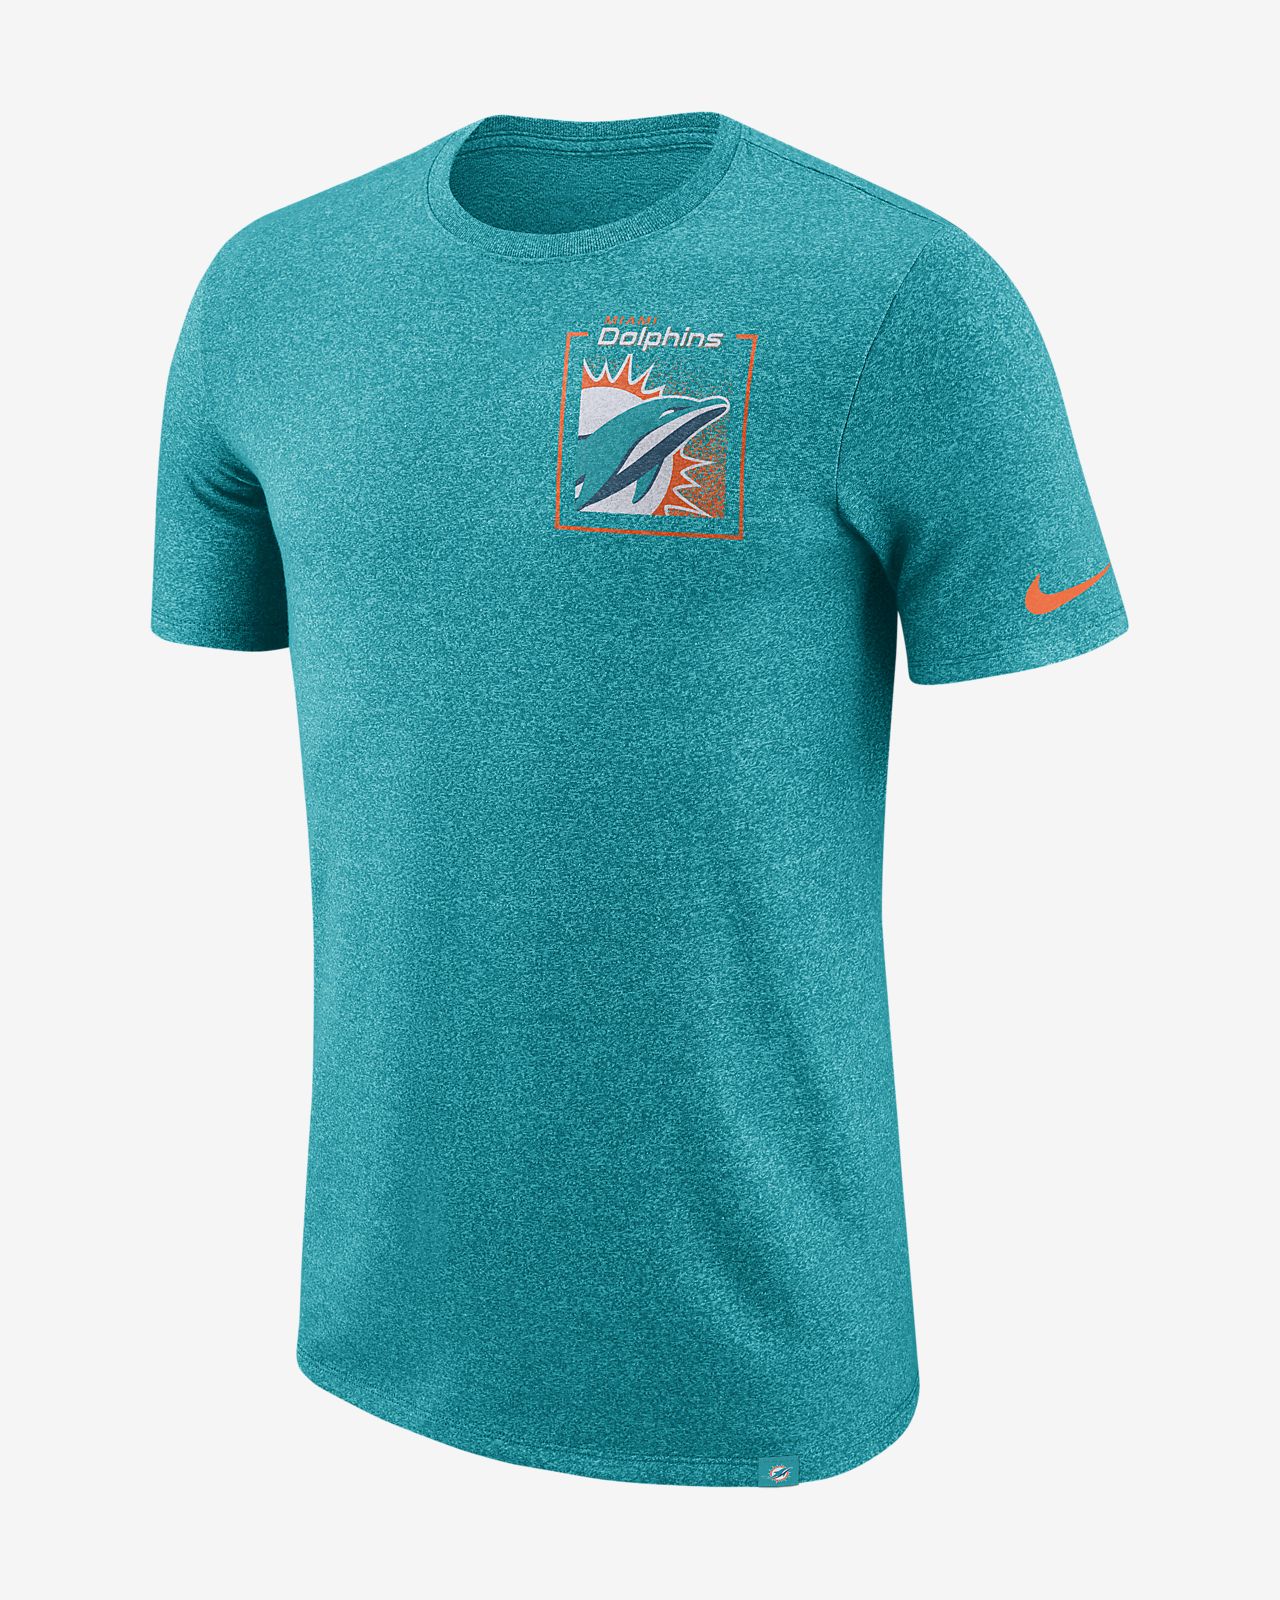 Nike (NFL Dolphins) Men's T-Shirt. Nike.com